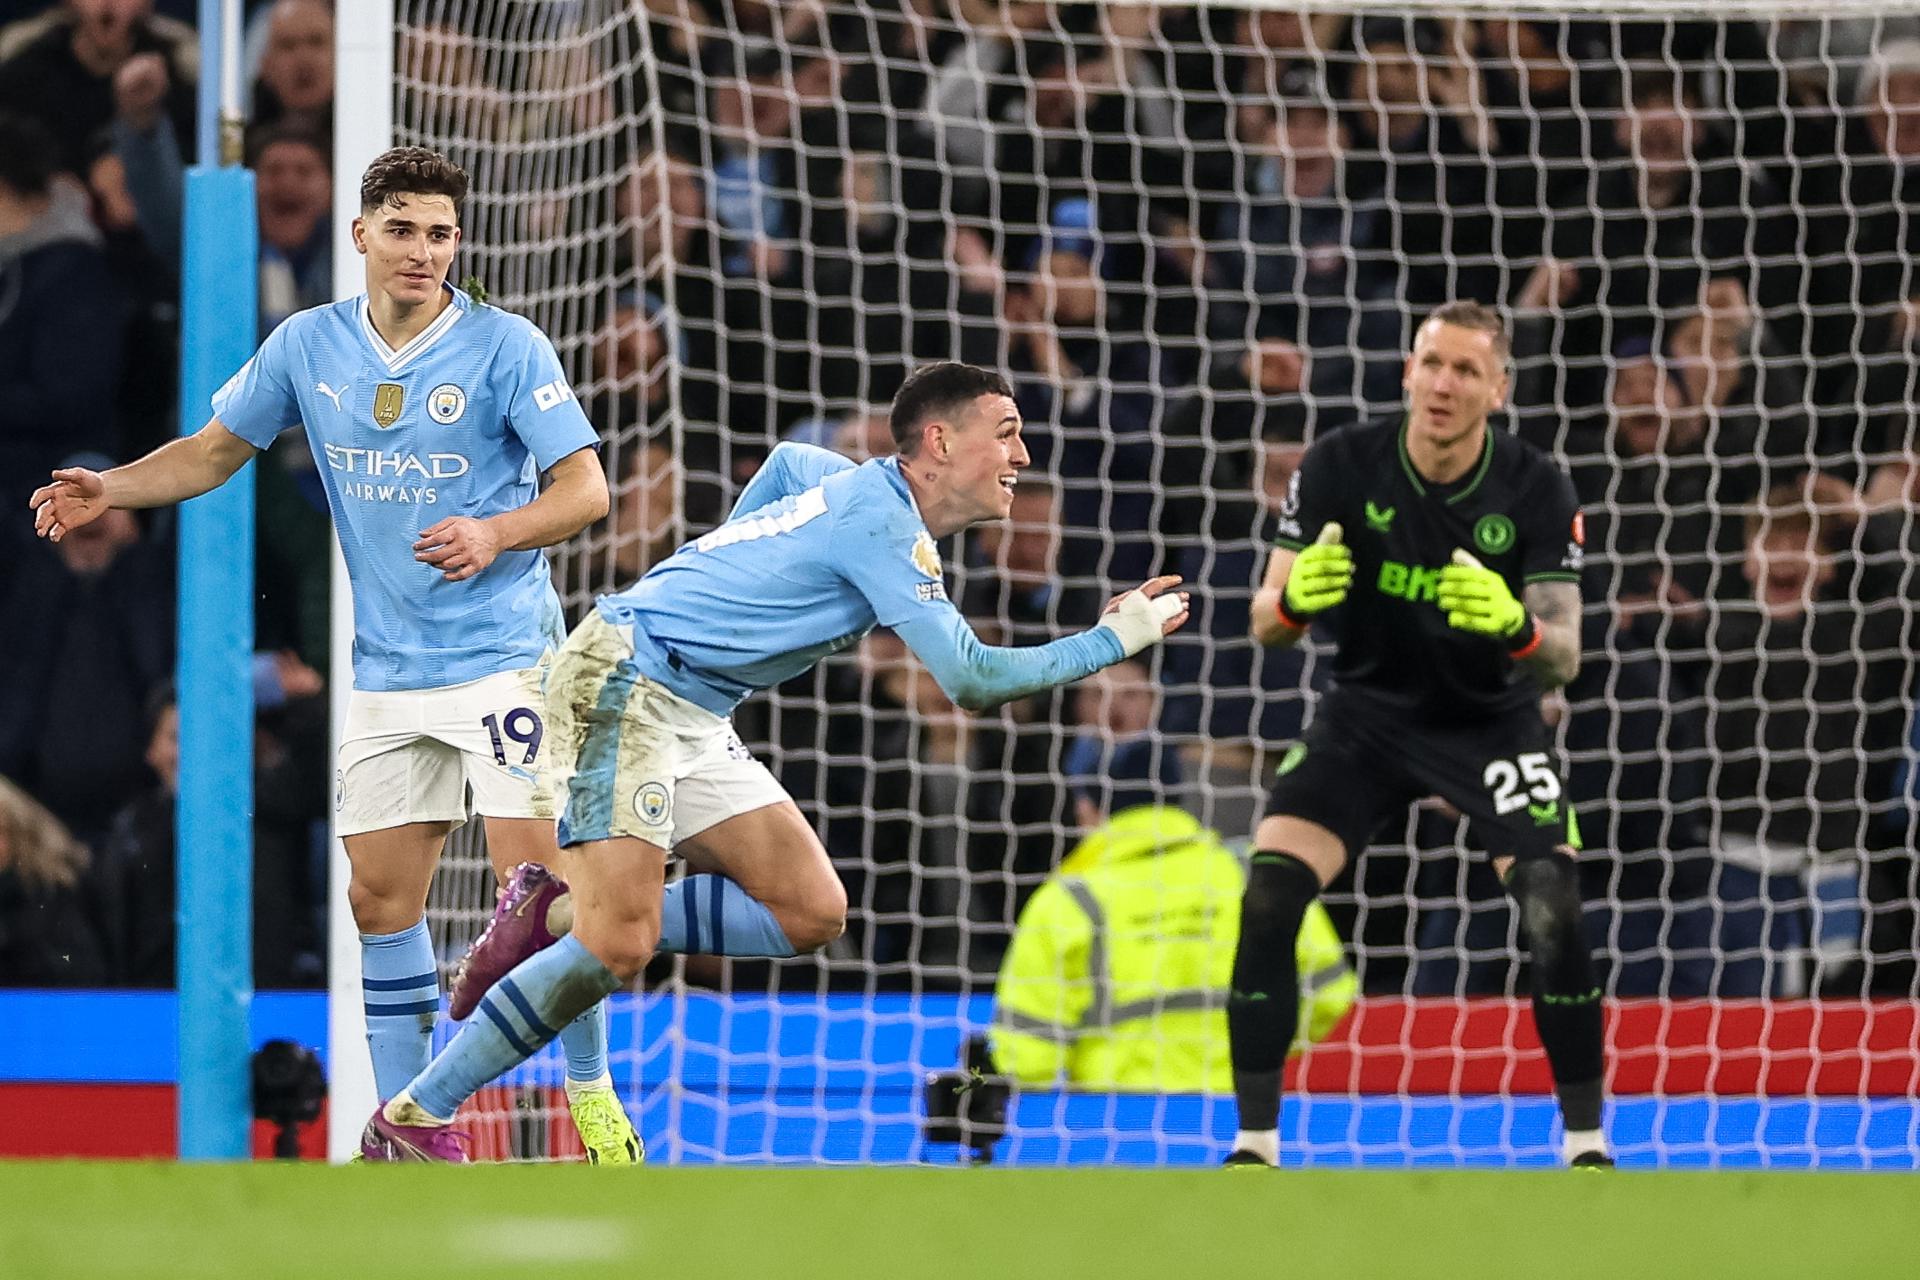 El jugador del City Phil Foden (c) celebrates el 4-1 durante el partido de la Premier League mque han jugado Manchester City y Aston Villa en Manchester, Reino Unido. EFE/EPA/ADAM VAUGHAN